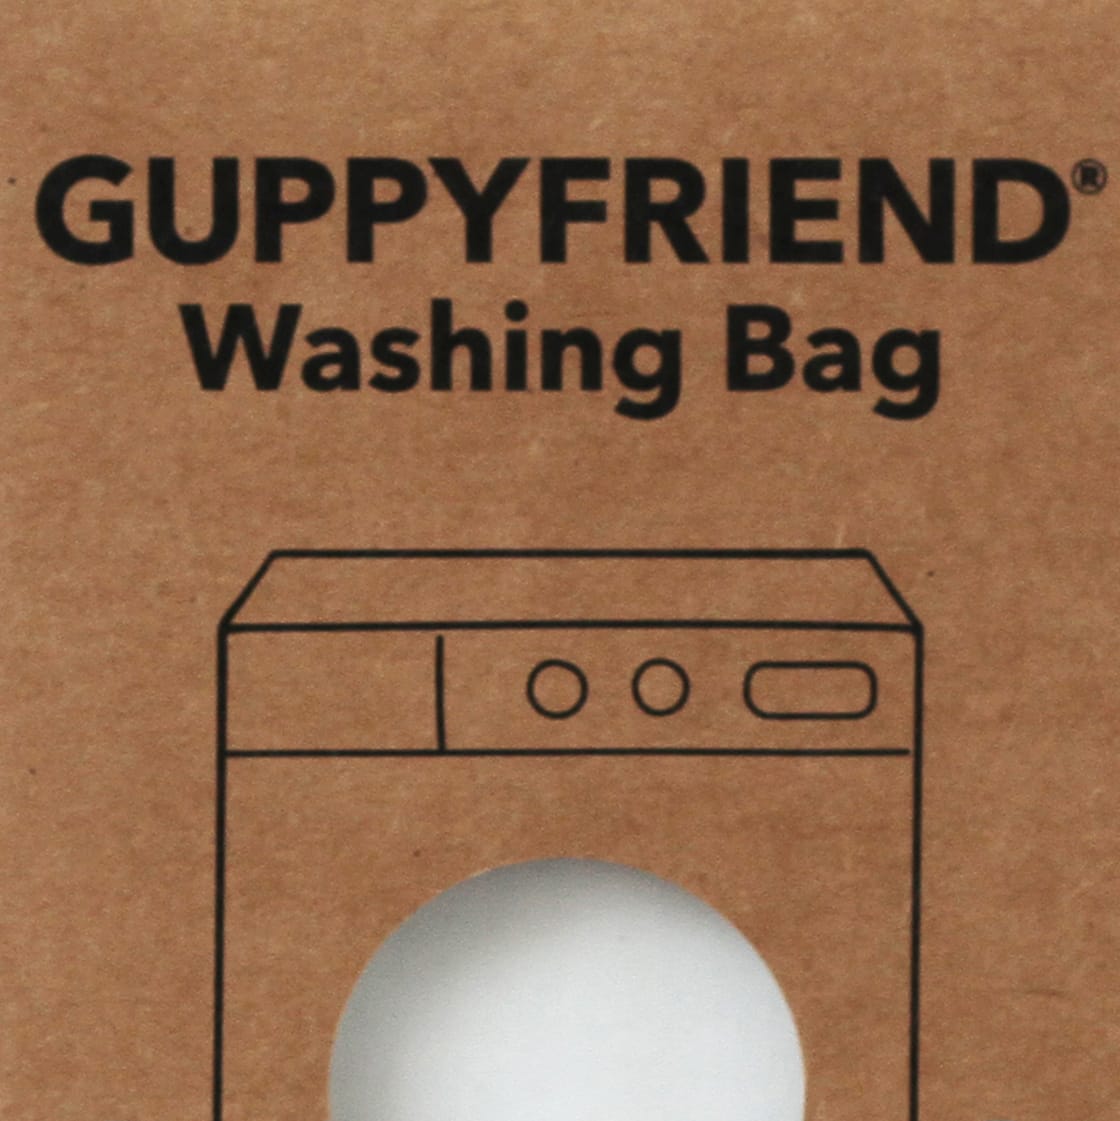 GUPPYFRIEND Washing Bag – Hem Support Wear